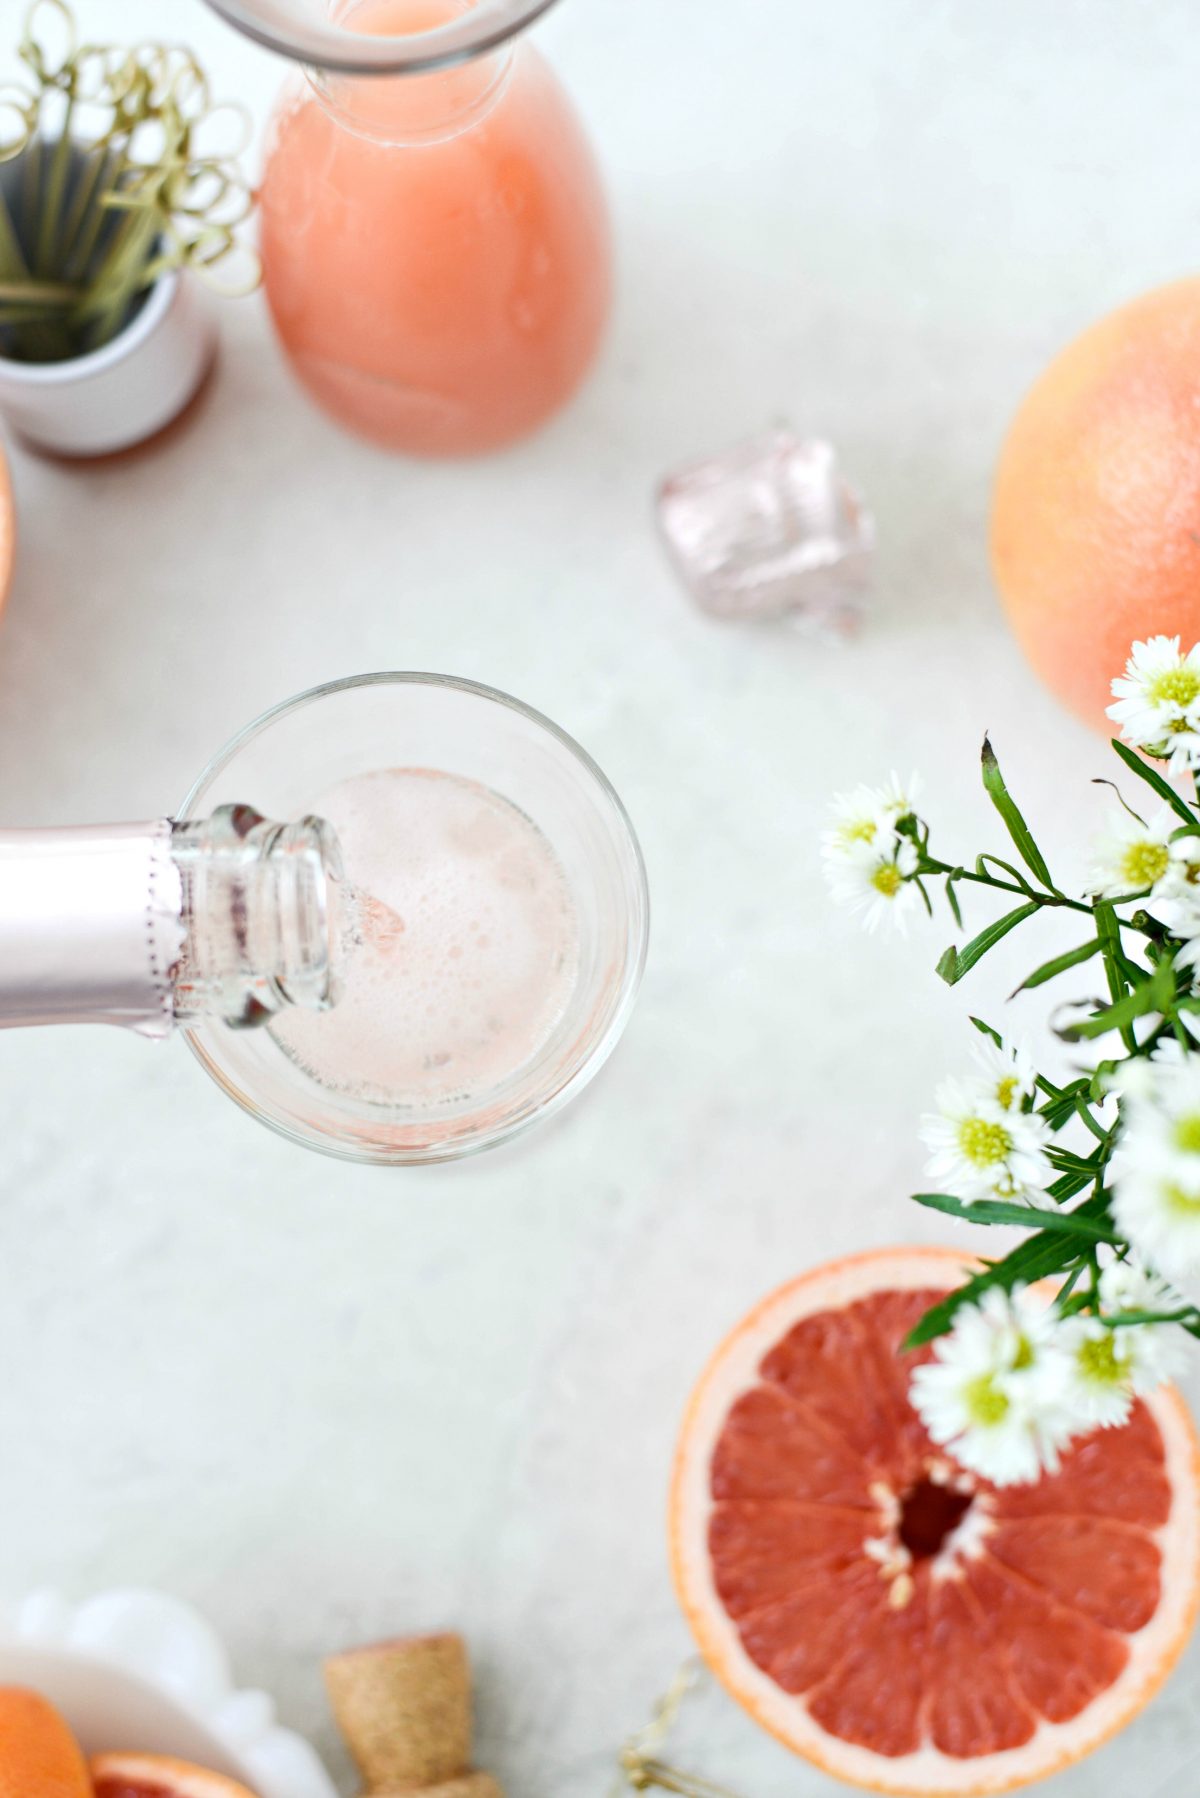 Mimosa av grapefrukt ros SimplyScratch.com #vuxen #dryck # grapefrukt #rose #mimosa # påsk #brunch #mothersday